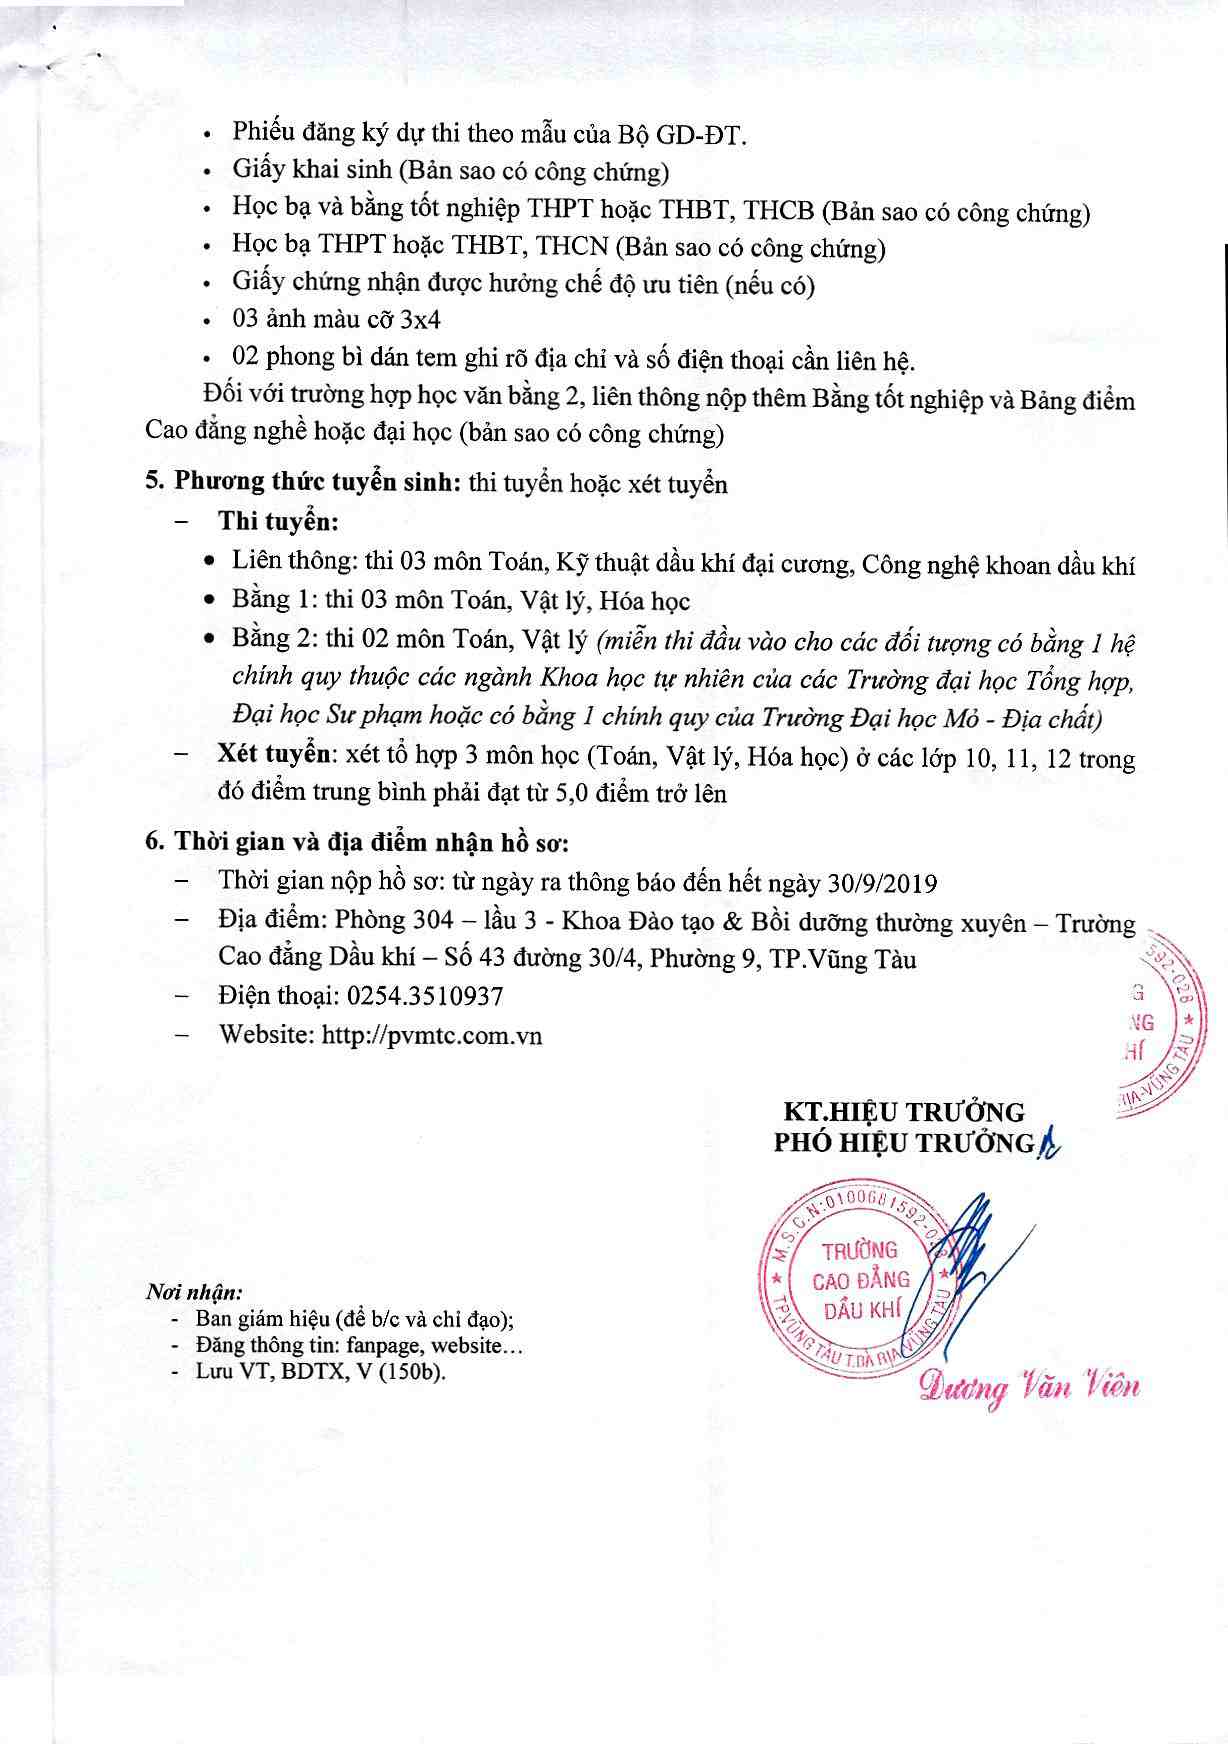 Thong Bao Tuyen Sinh Lien Thong Dh Mo Dc 2019 Page 2 Image 0001